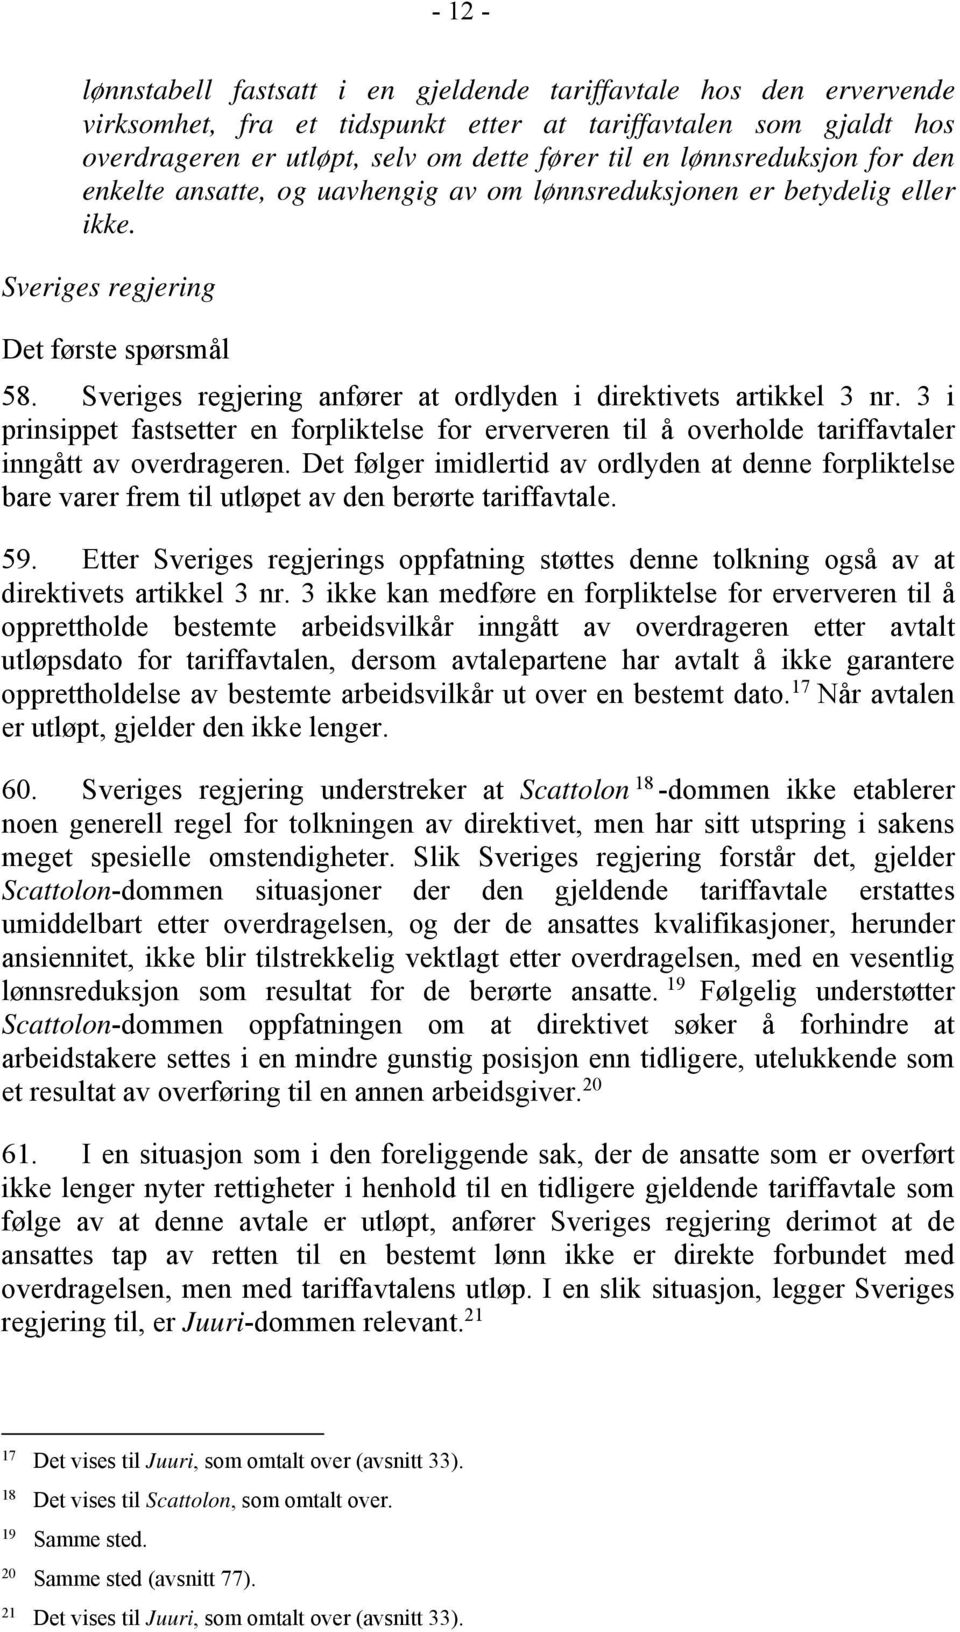 Sveriges regjering anfører at ordlyden i direktivets artikkel 3 nr. 3 i prinsippet fastsetter en forpliktelse for erververen til å overholde tariffavtaler inngått av overdrageren.